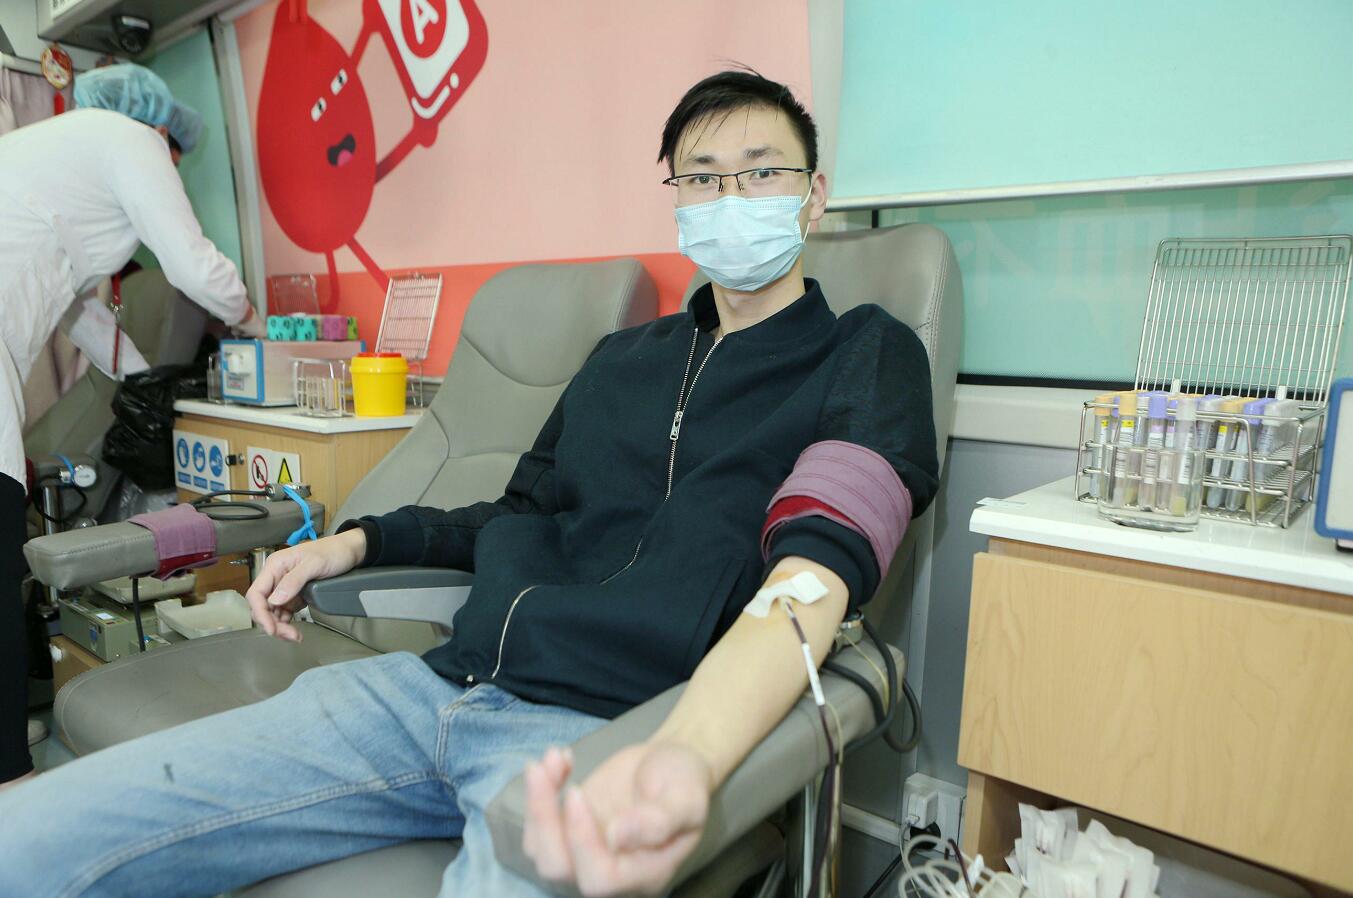 让心动变成行动！闵行中心医院30余名“白衣天使”慷慨献血